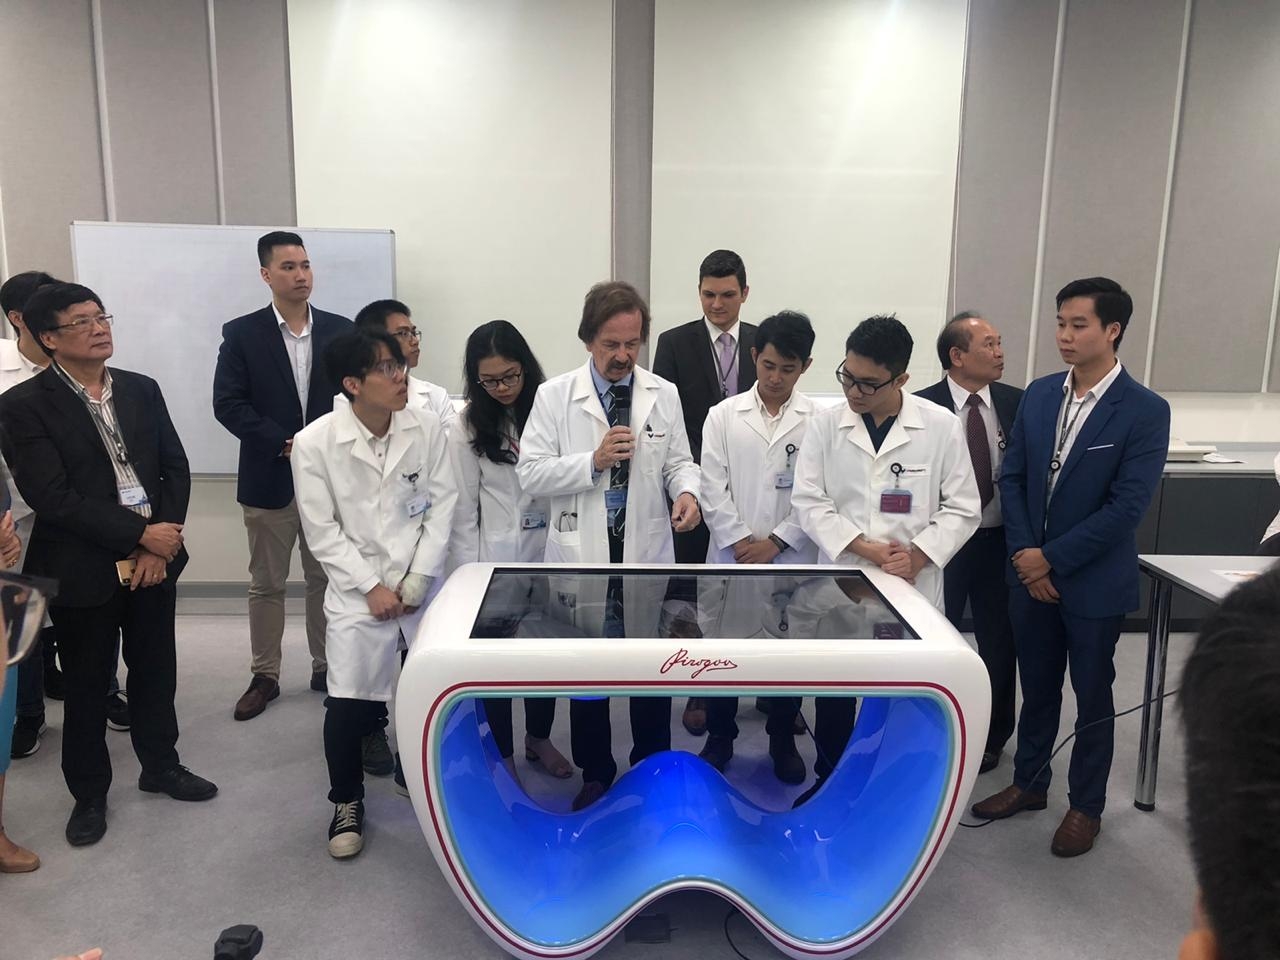 Интерактивный анатомический стол "Пирогов" будут использовать во вьетнамском университете